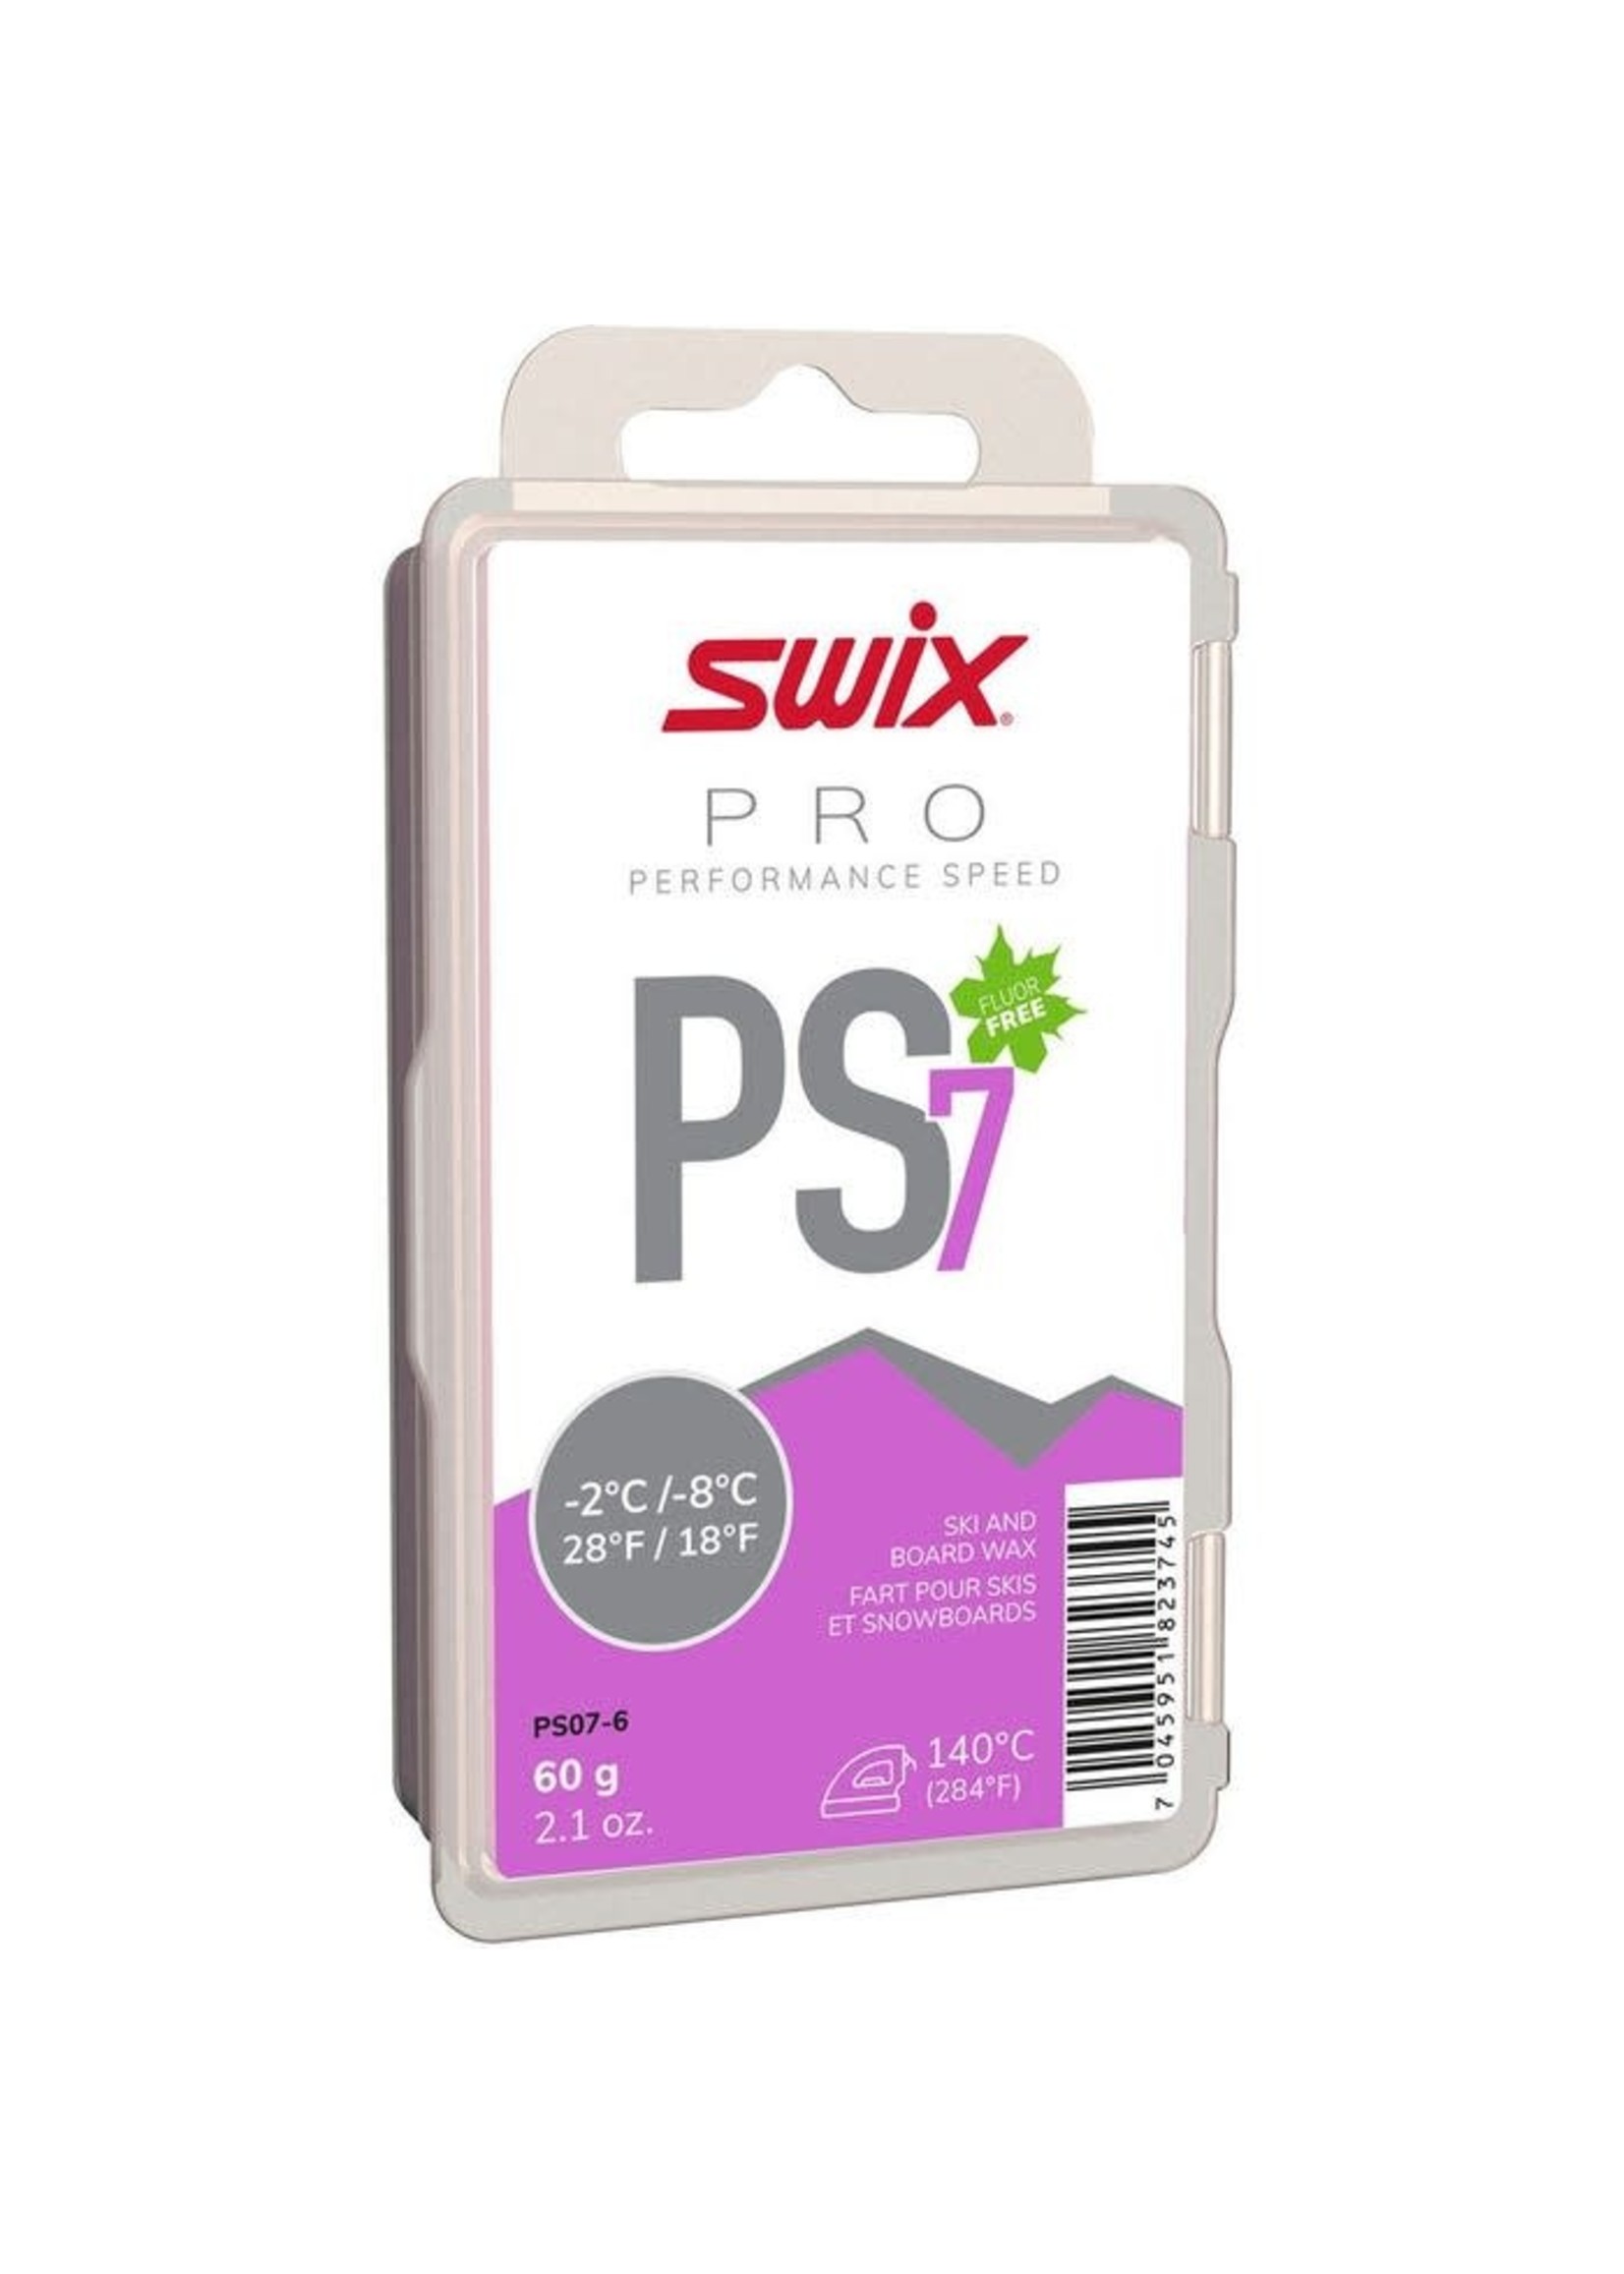 Swix Fart de glisse Pro Speed PS7 -2/-8